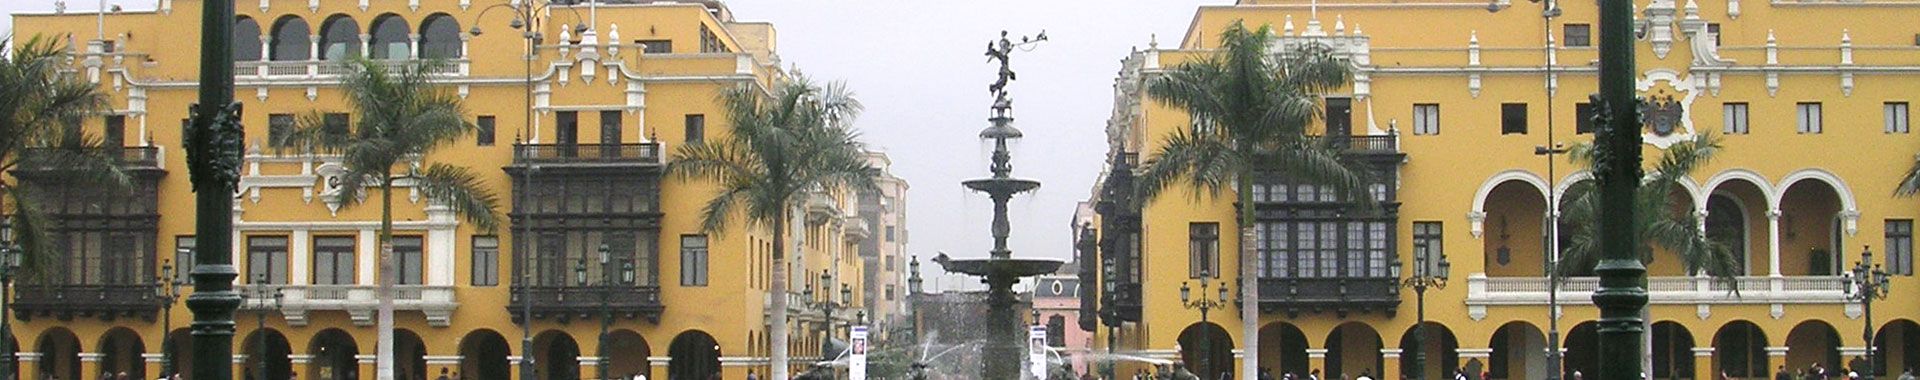 Peru - Lima - Lugares